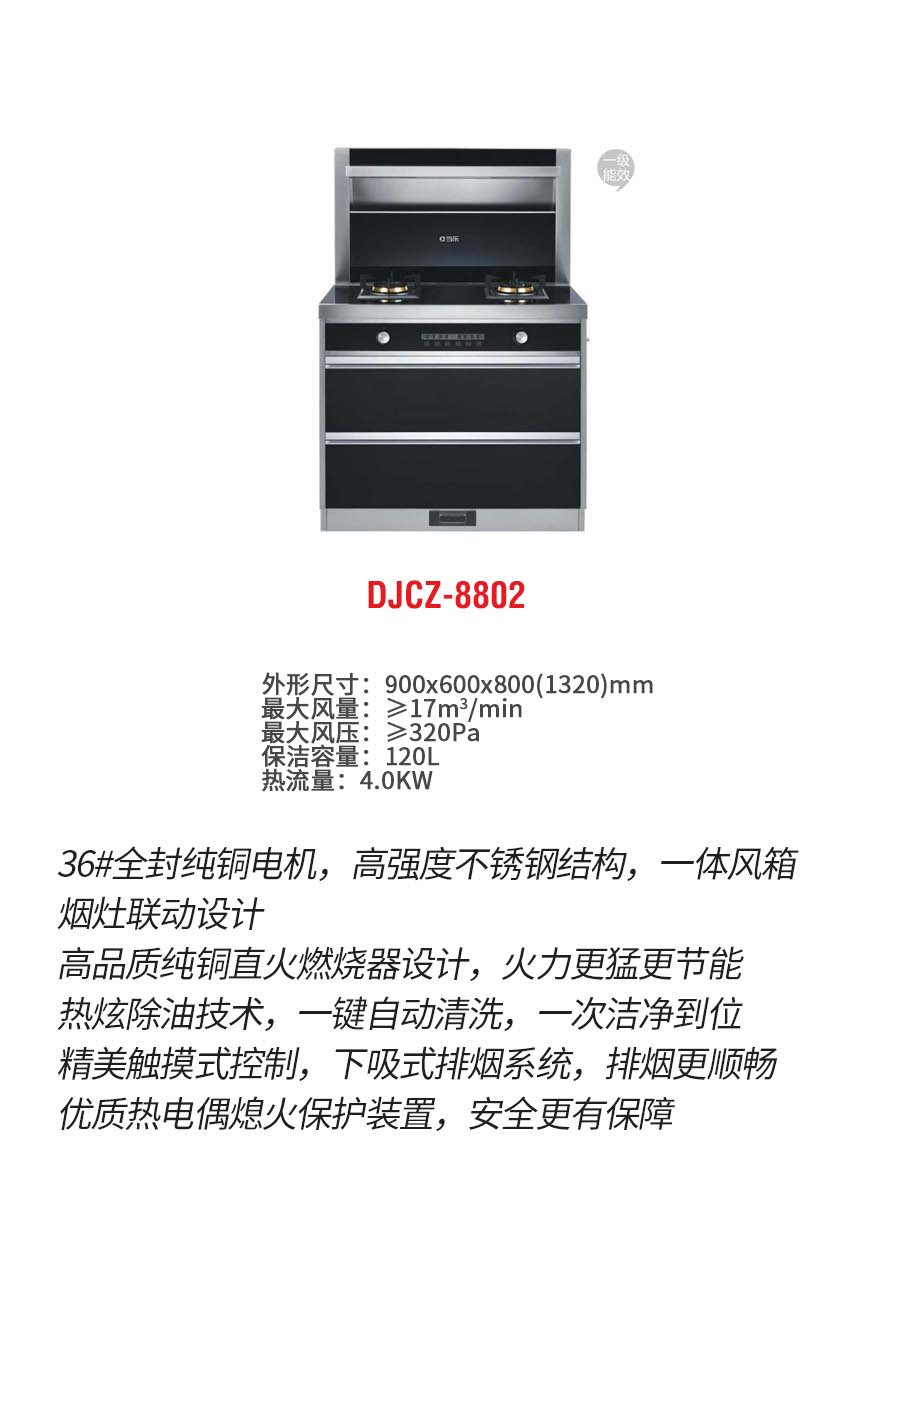 DJCZ-8802b.jpg